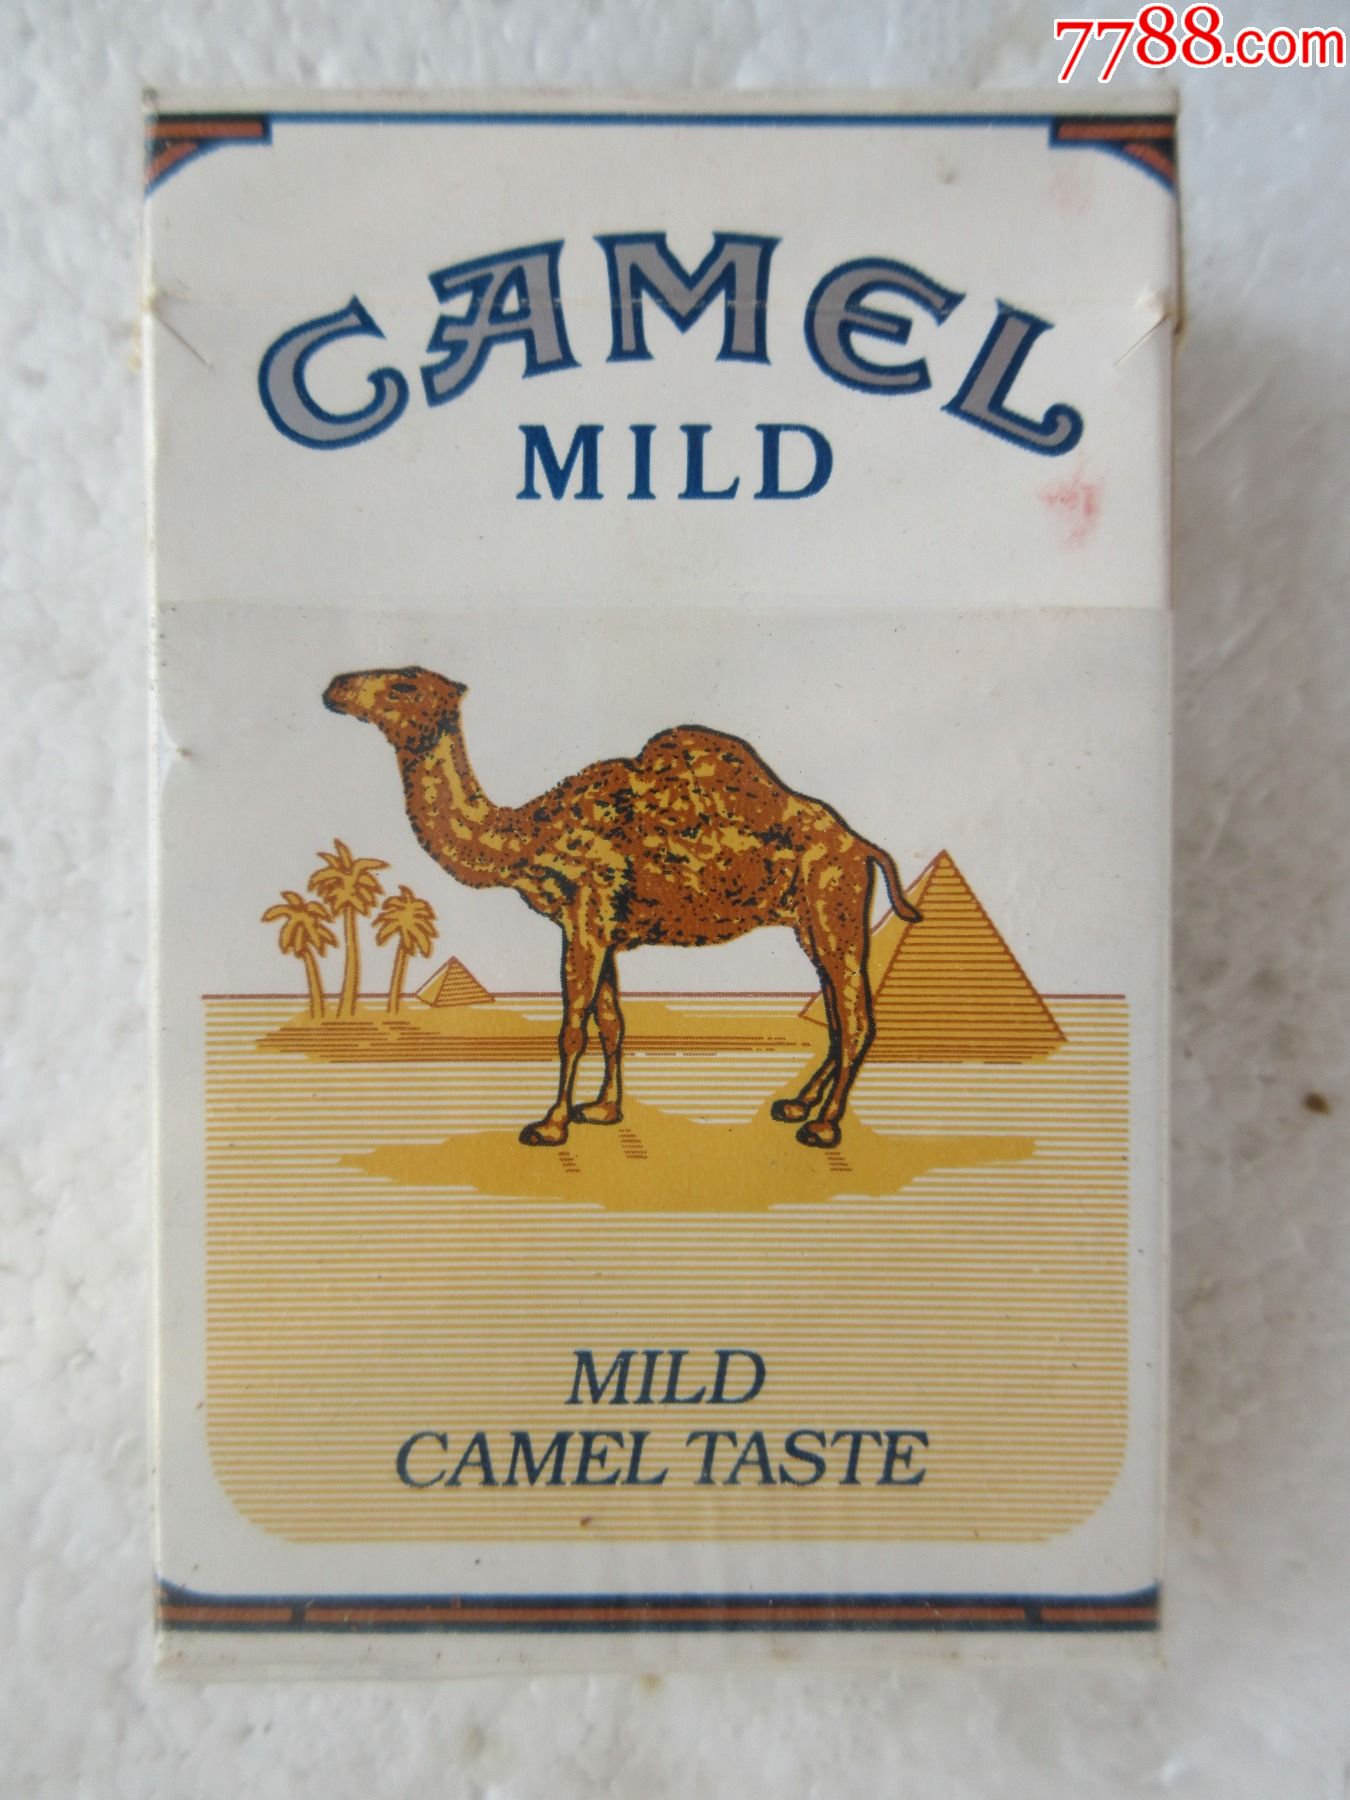 骆驼牌雪茄烟图片